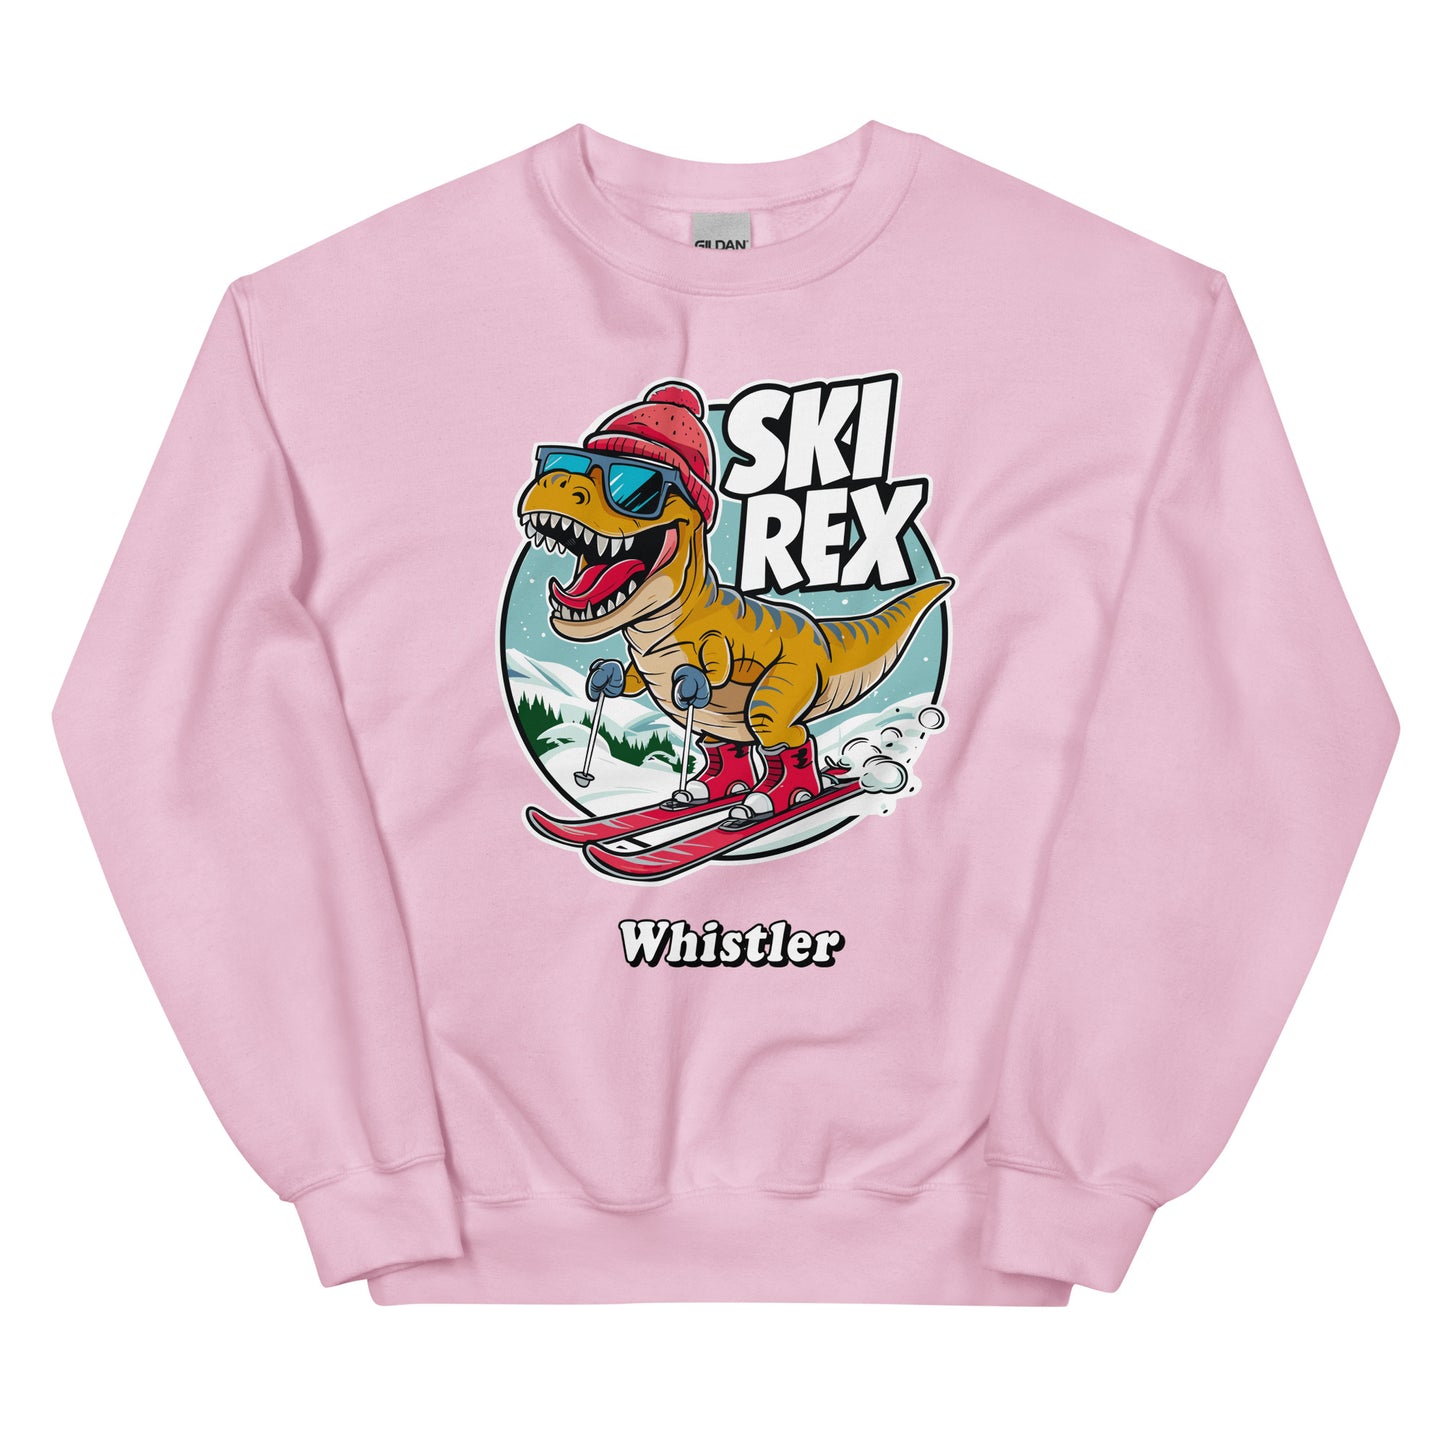 Ski Rex Whistler printed Crewneck Sweatshirt printed by Whistler Shirts